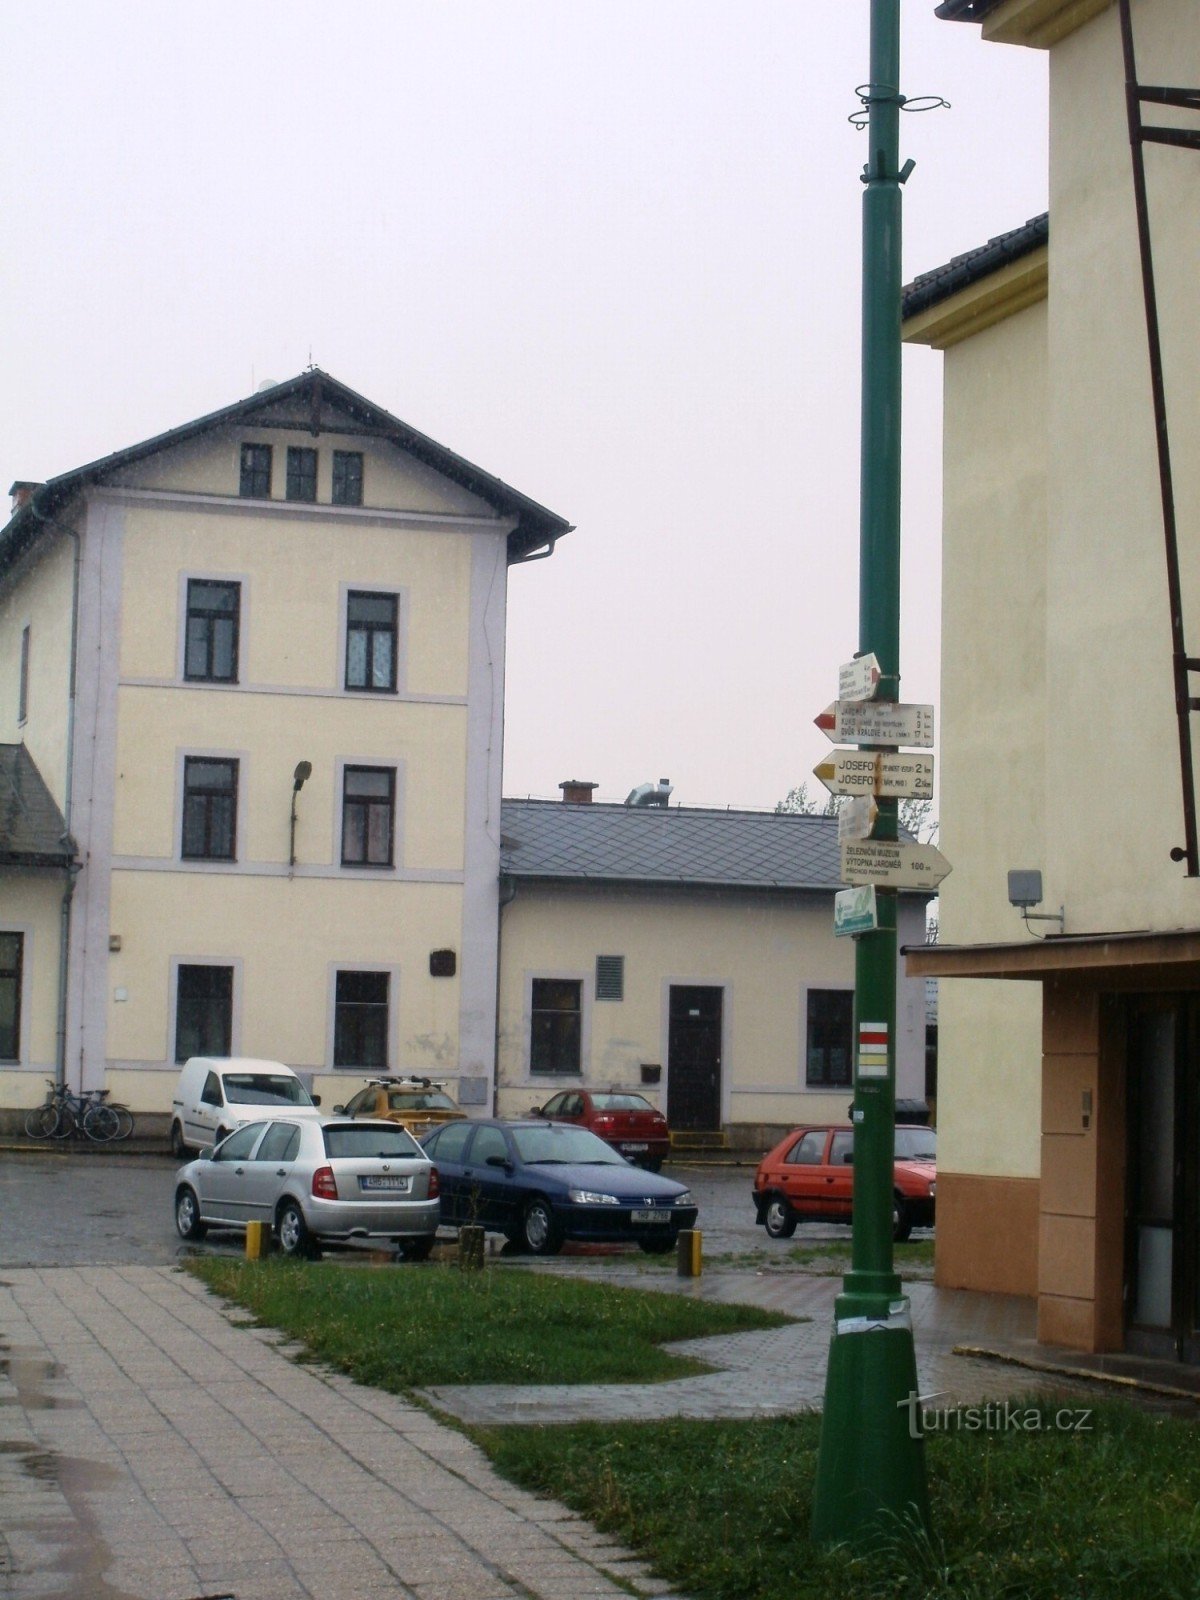 туристический перекресток Jaroměř - железная дорога, железнодорожная станция